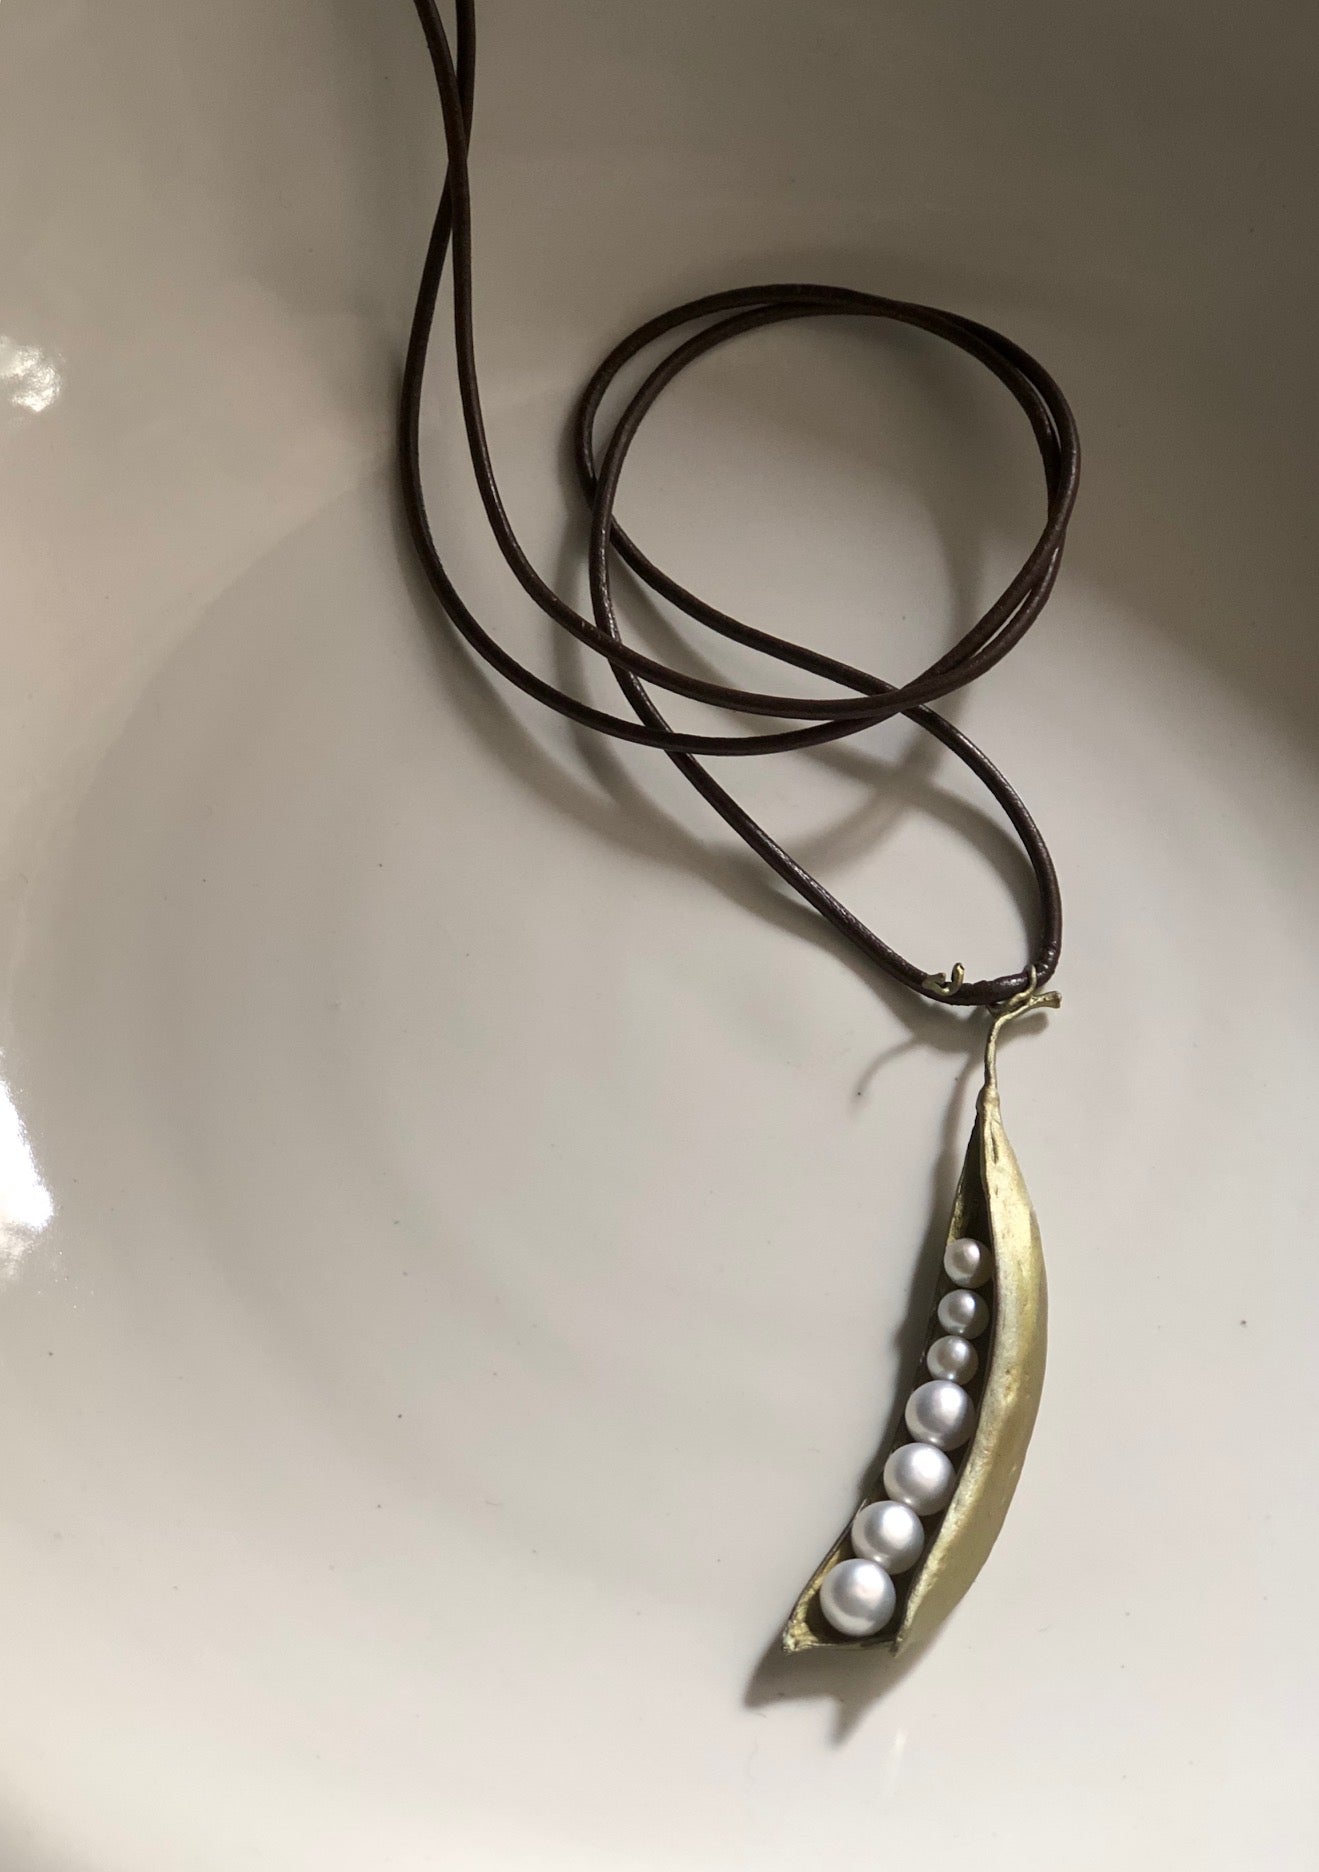 エンドウのペンダント 革紐 - 7個のパール / Peapod Pendant Leather Cord - 7 Pearls